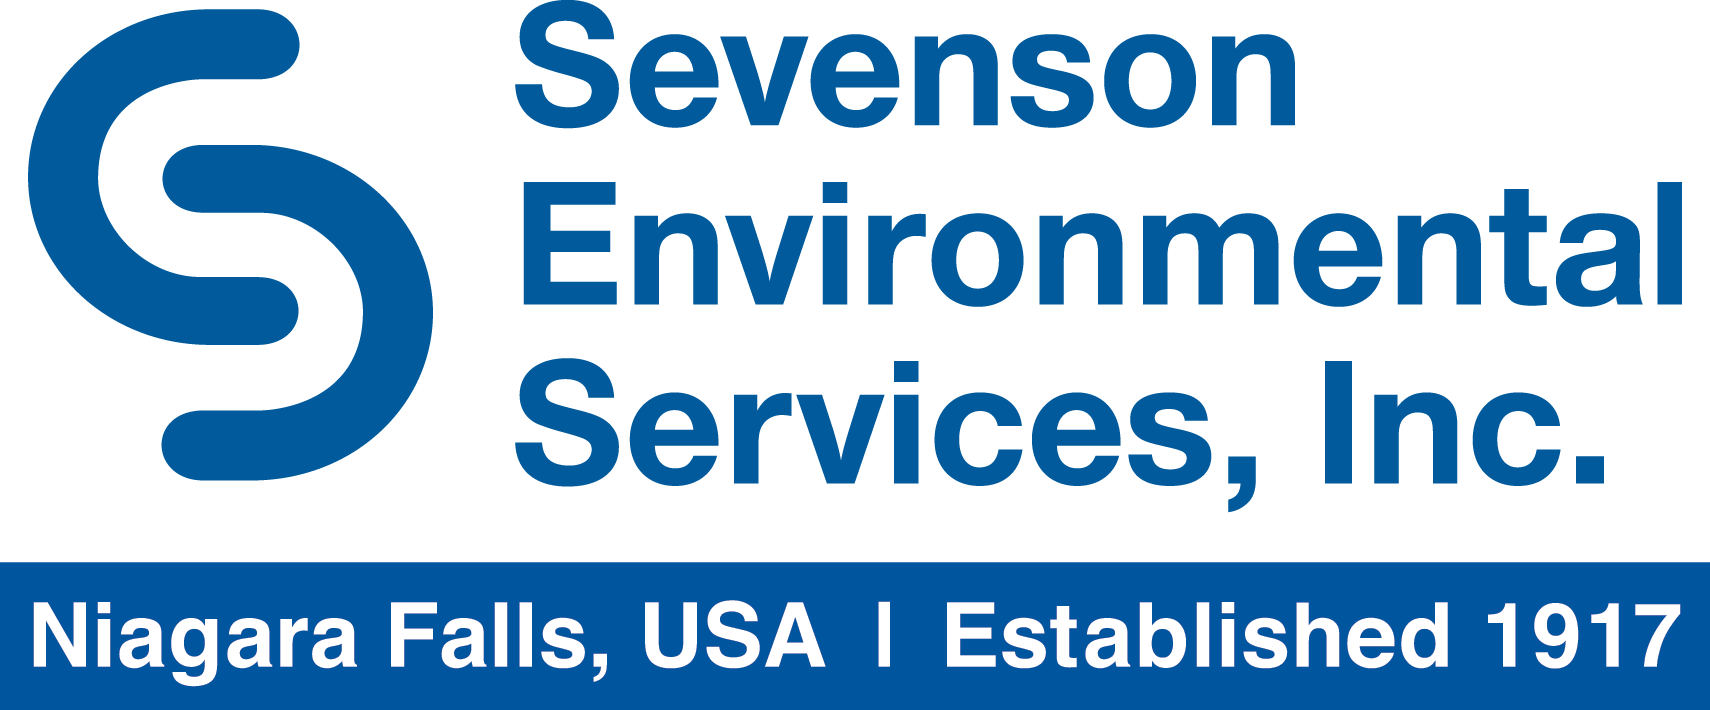 Sevenson Environmental Services logo